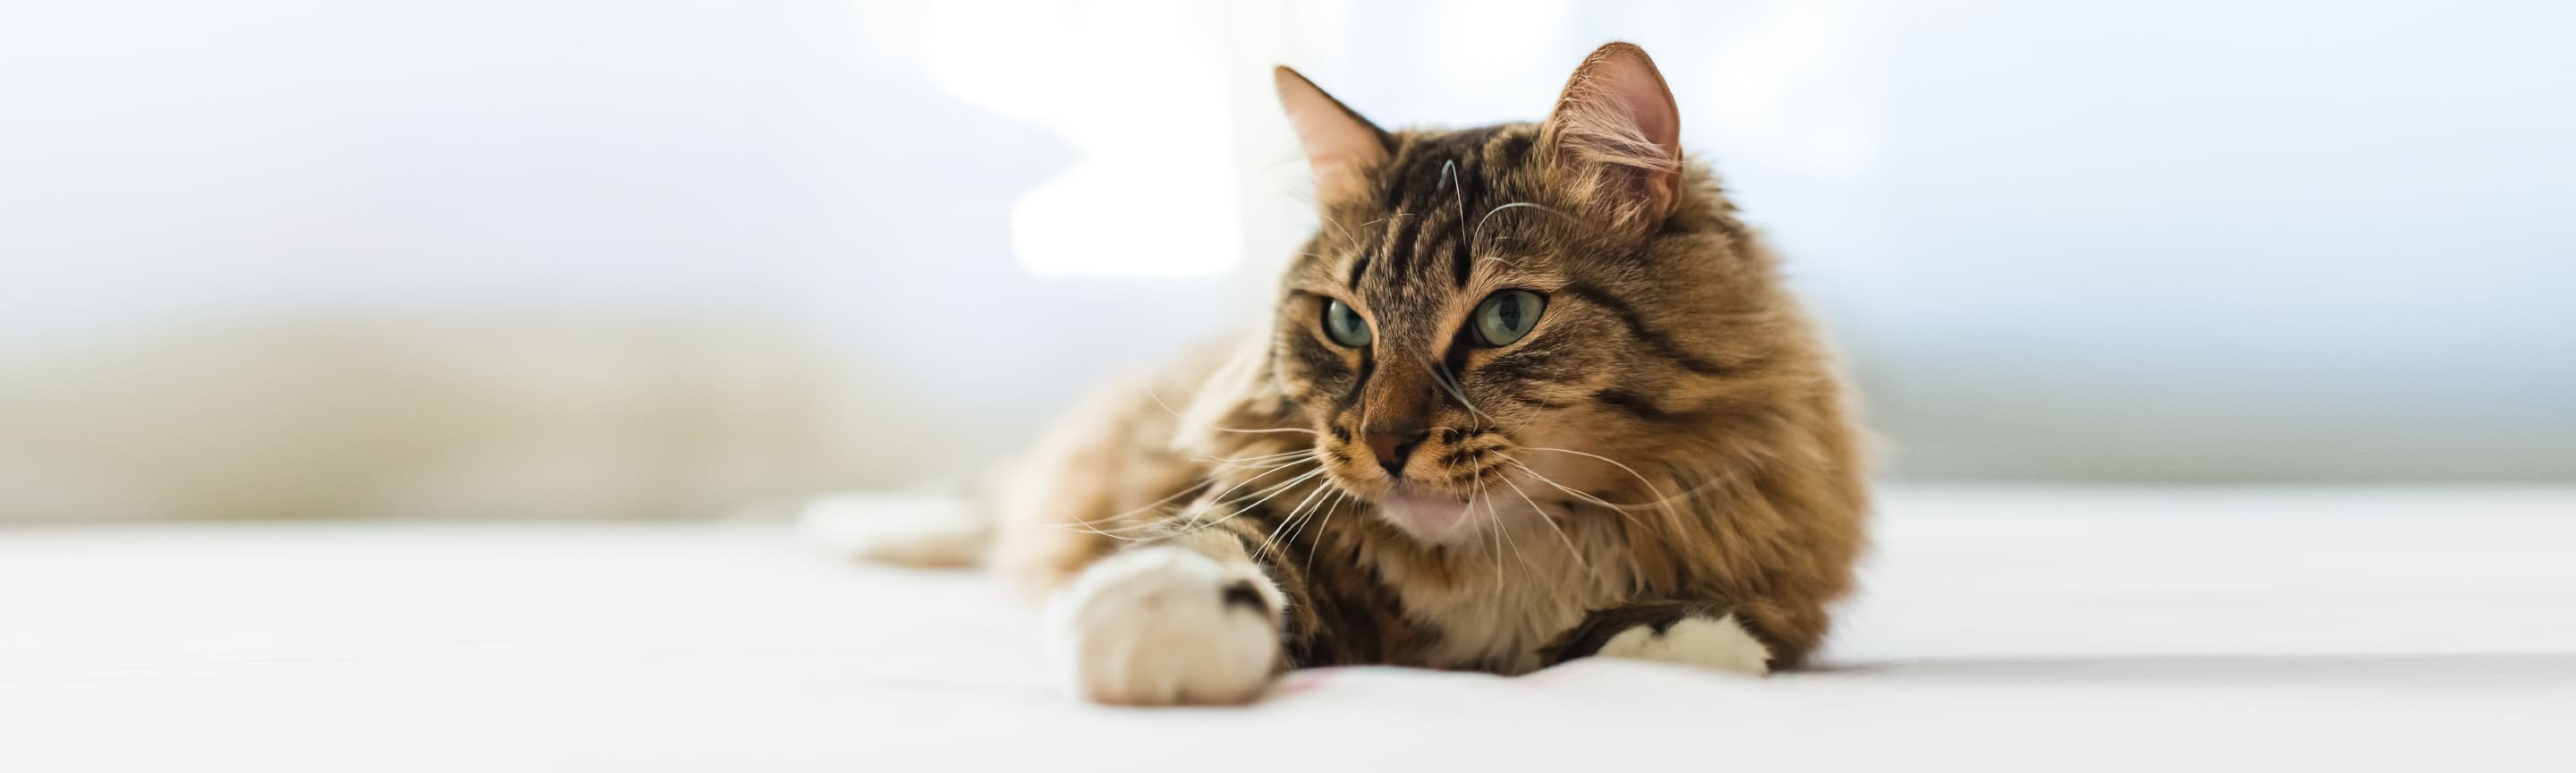 Бронхиальная астма у кошек: симптомы и лечение